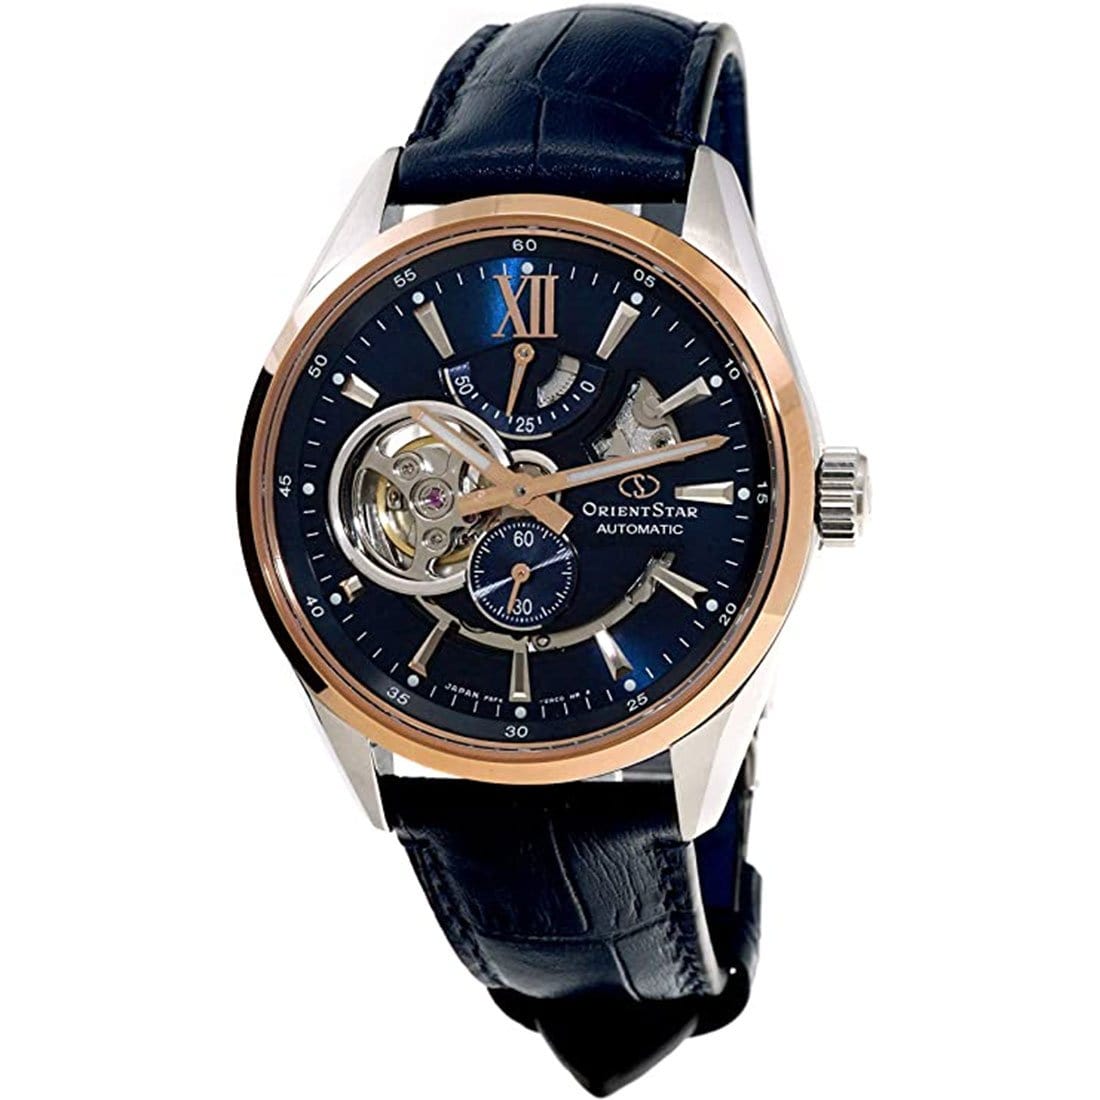 RE-AV0111L RE-AV0111L00B Orient Star Automatic 100M Leather Male Watch